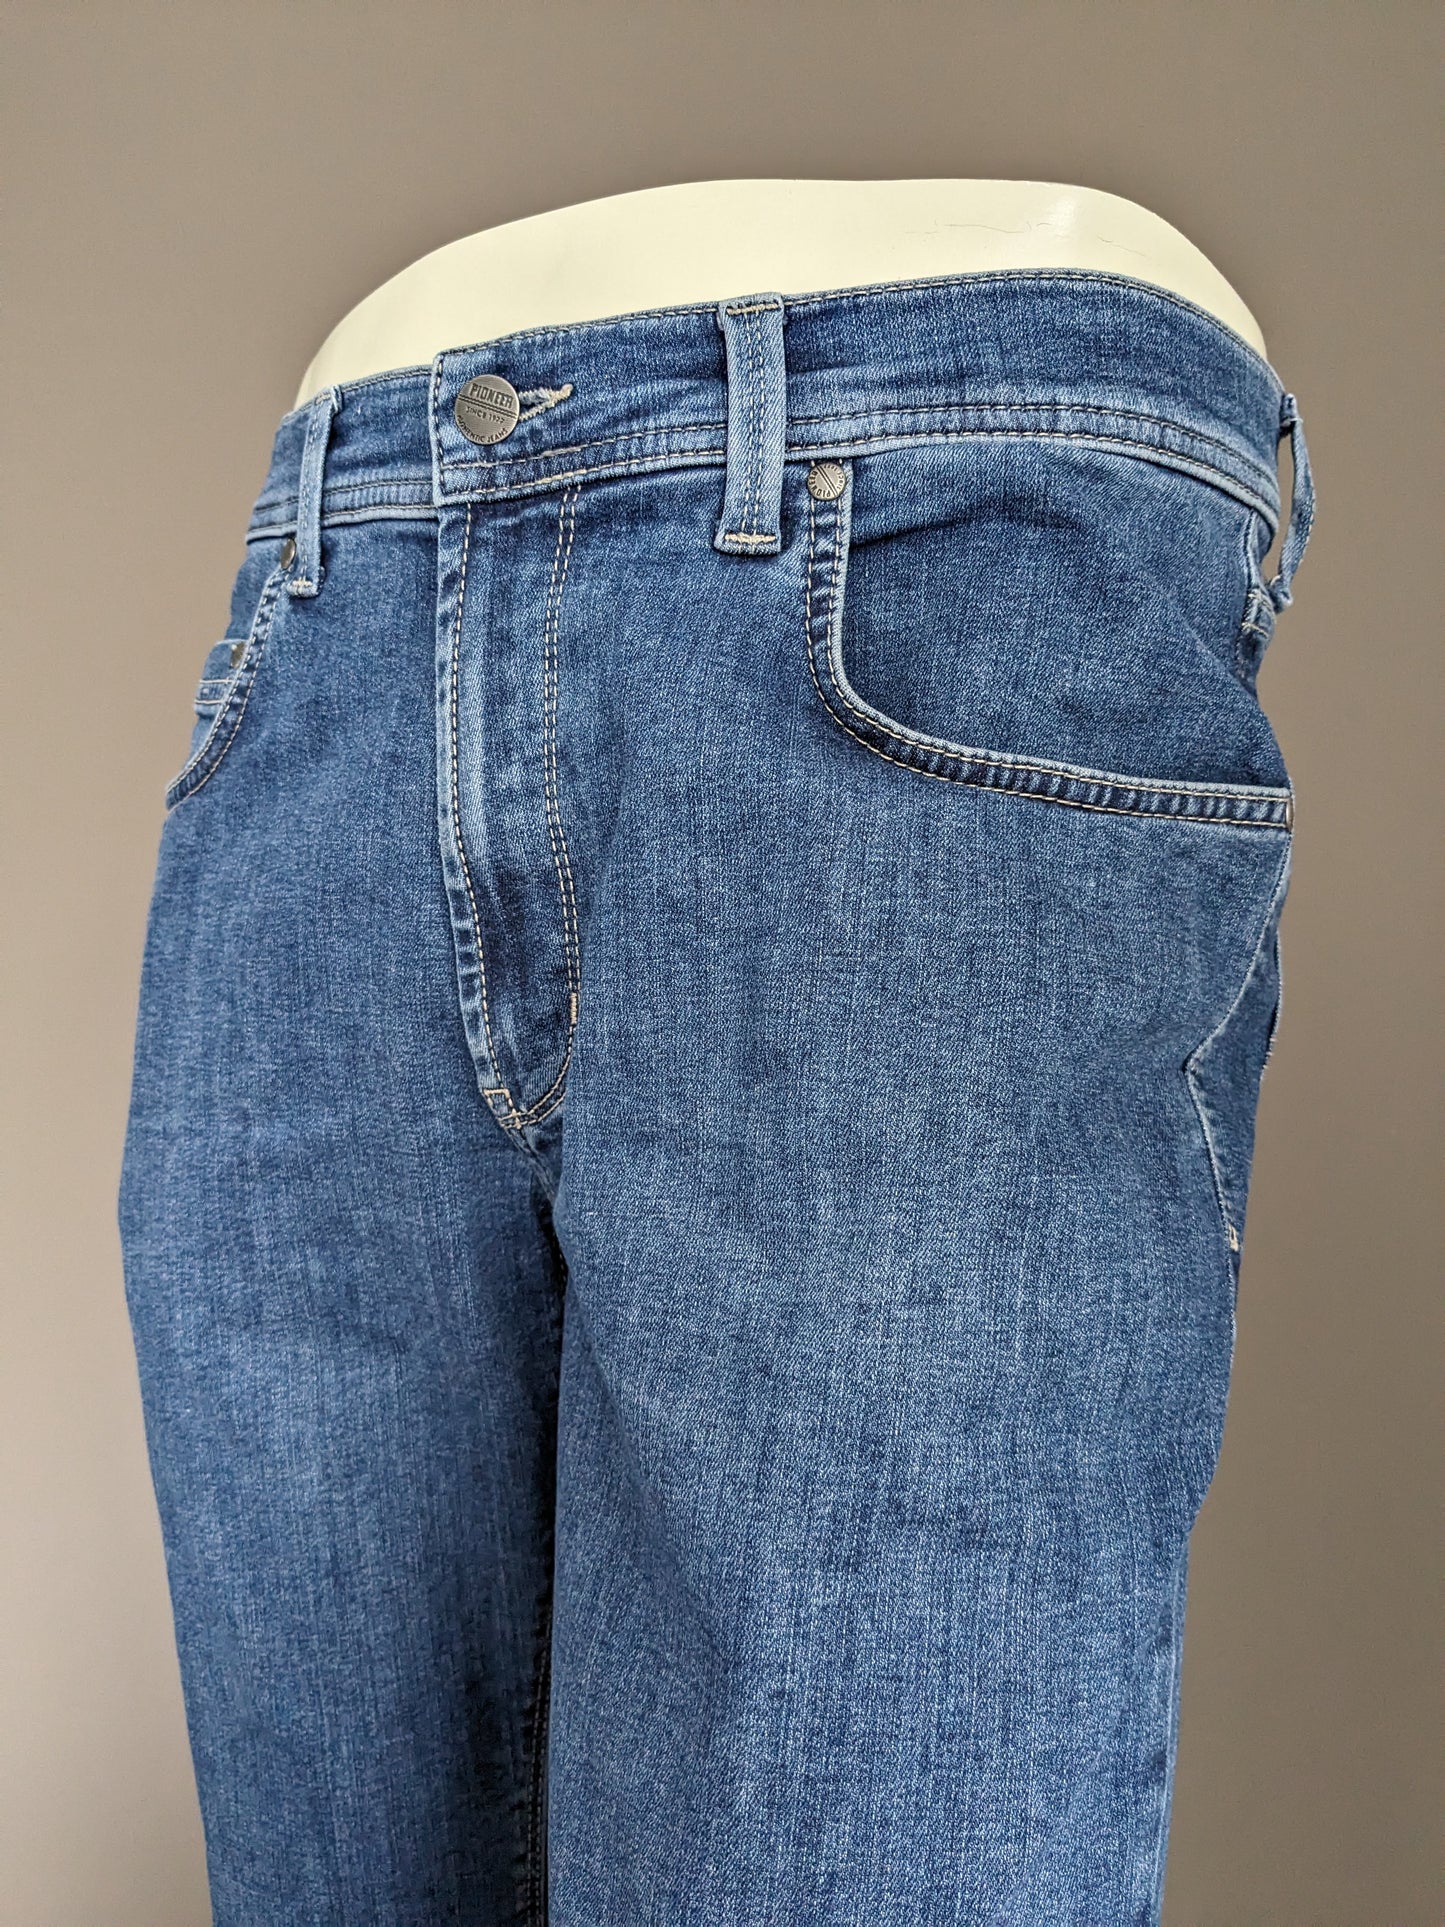 Jeans pioneros. Color azul. Tamaño W33 - L30. Mega Flex. Escribe rando. estirar.